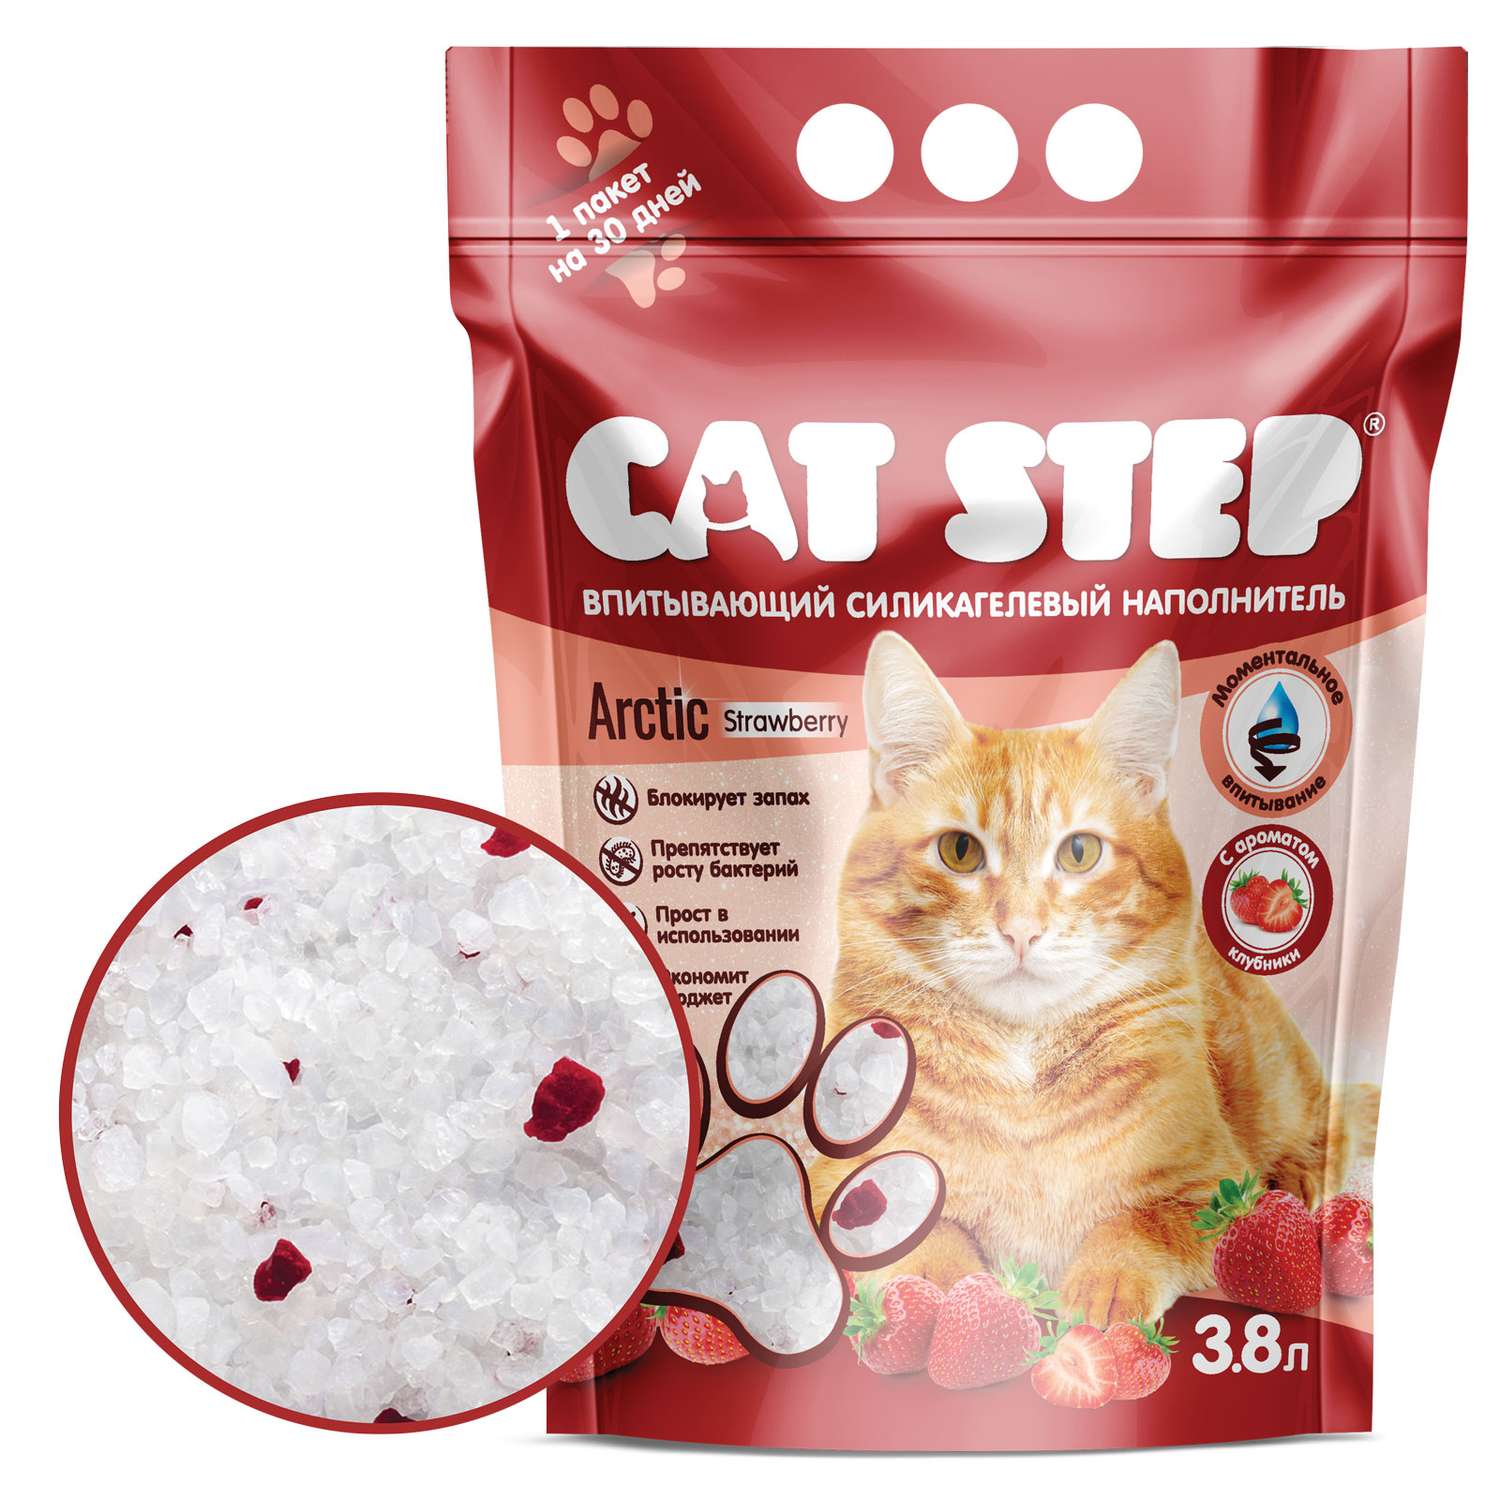 Наполнитель для кошек Cat Step Arctic Strawberry впитывающий силикагелевый 3.8л - фото 1